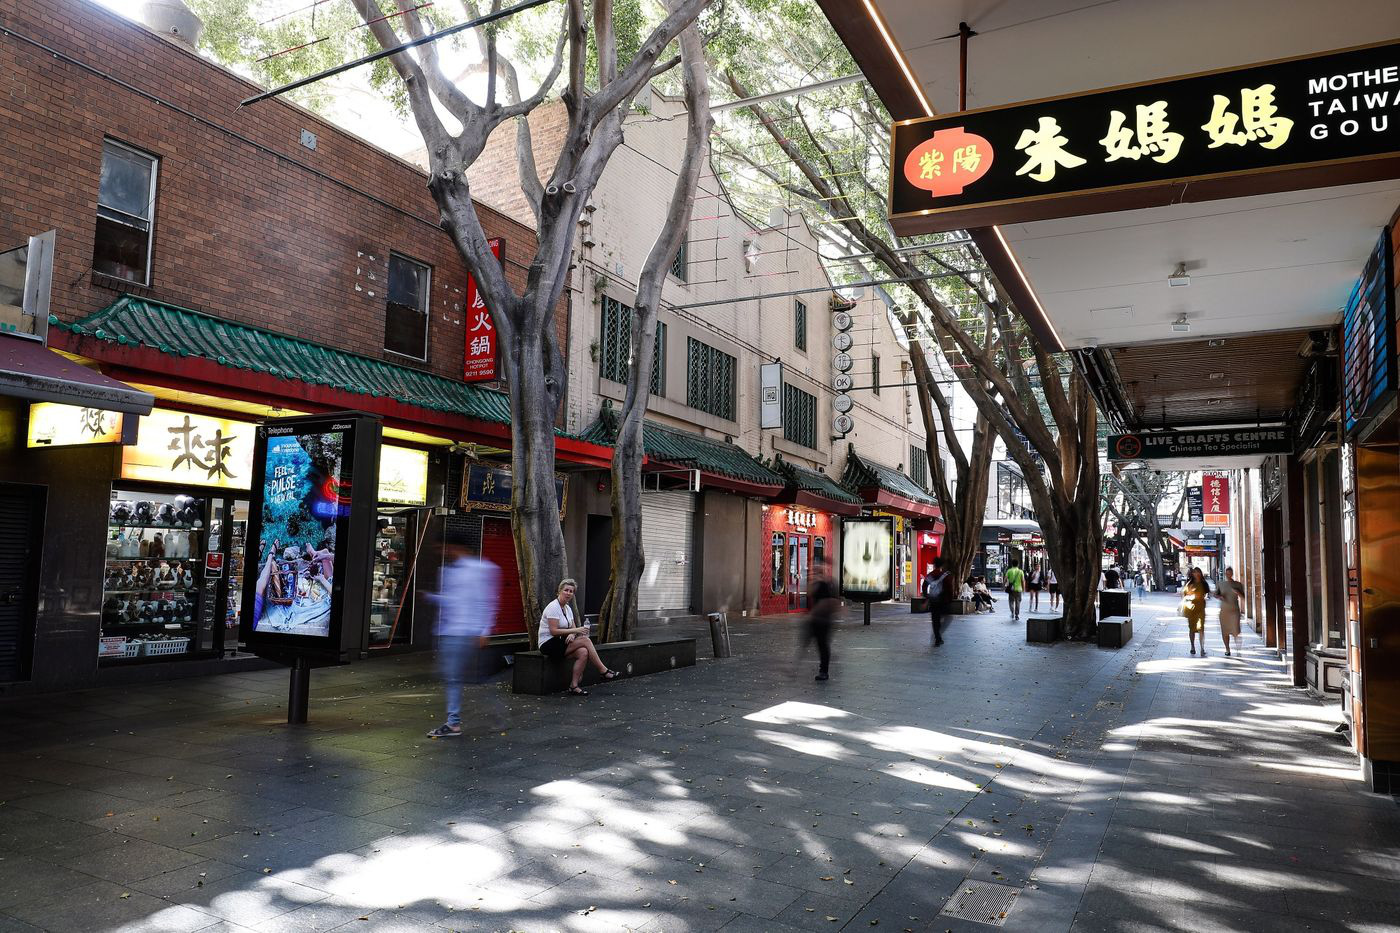 Lo sợ dịch bệnh, những nhà hàng ở các khu Chinatown trên khắp thế giới vắng lặng không một bóng người - Ảnh 3.